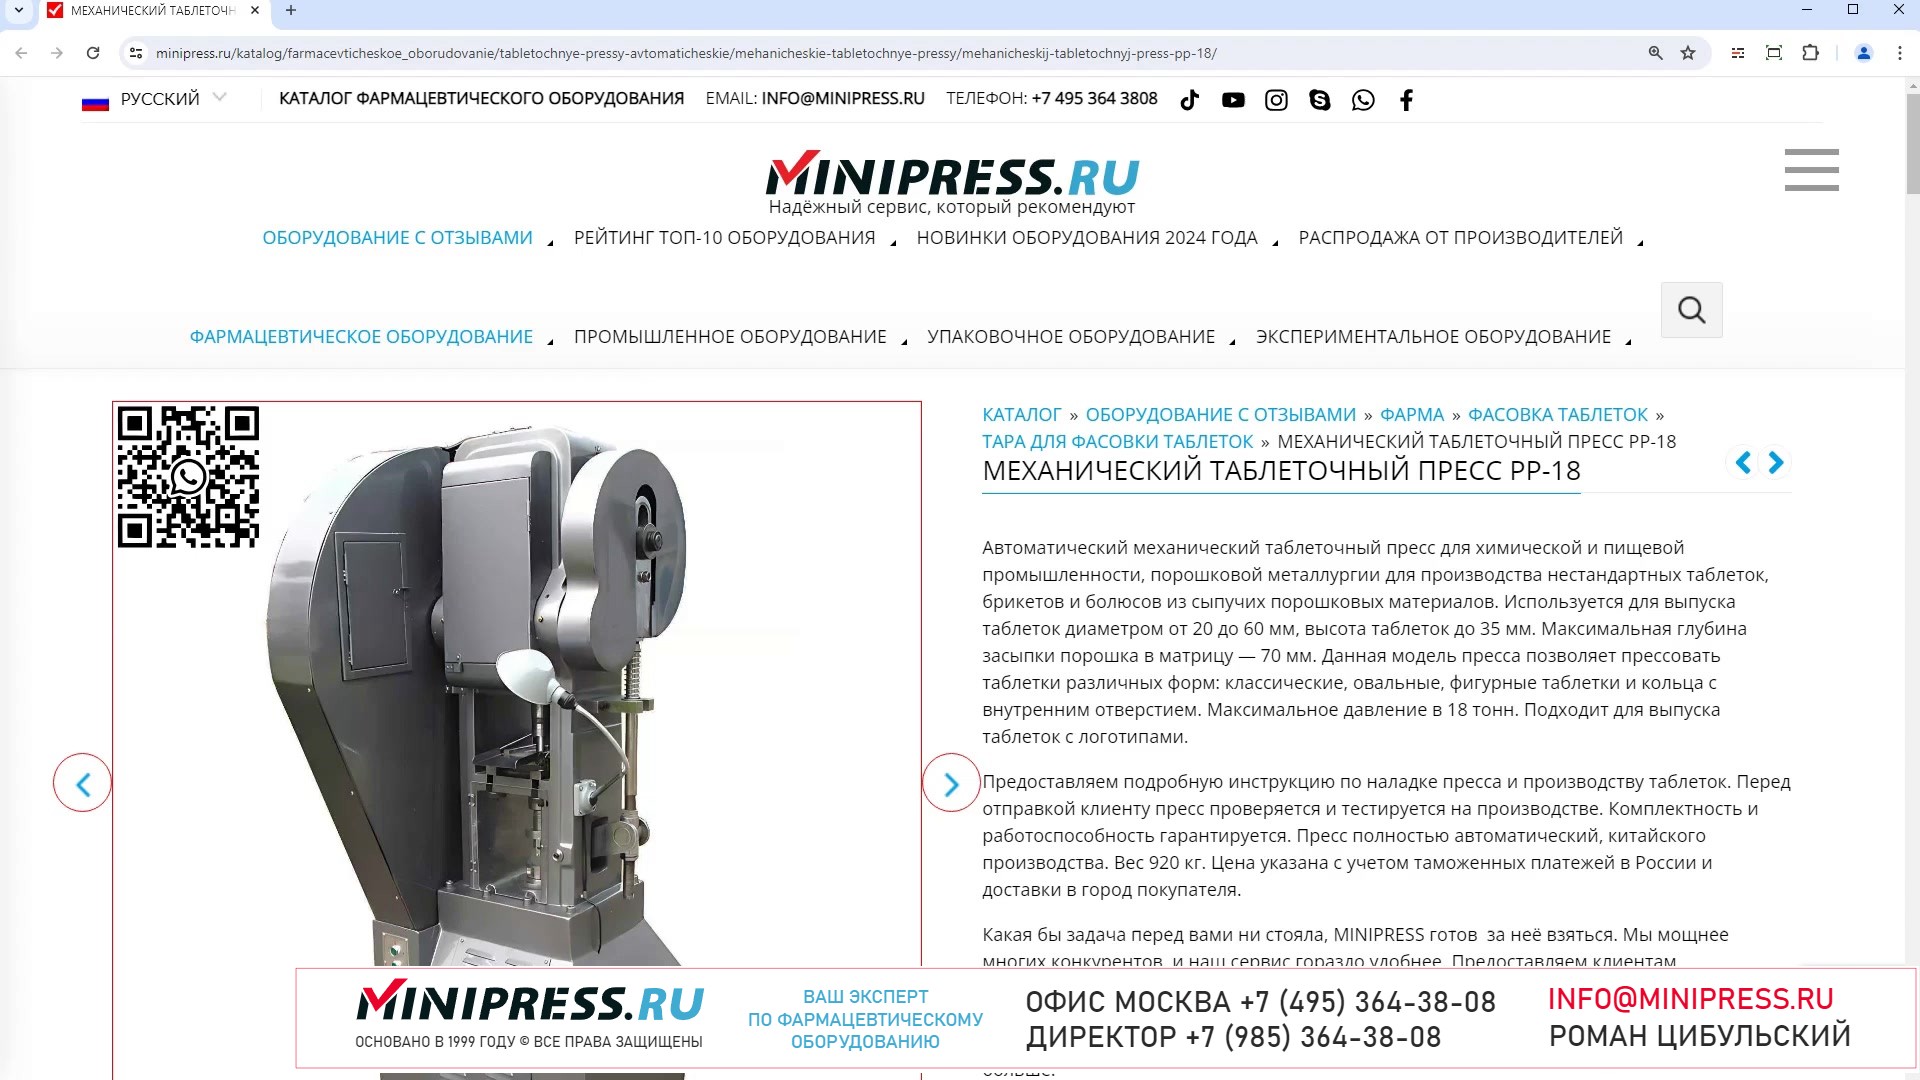 Minipress.ru Механический таблеточный пресс PP-18